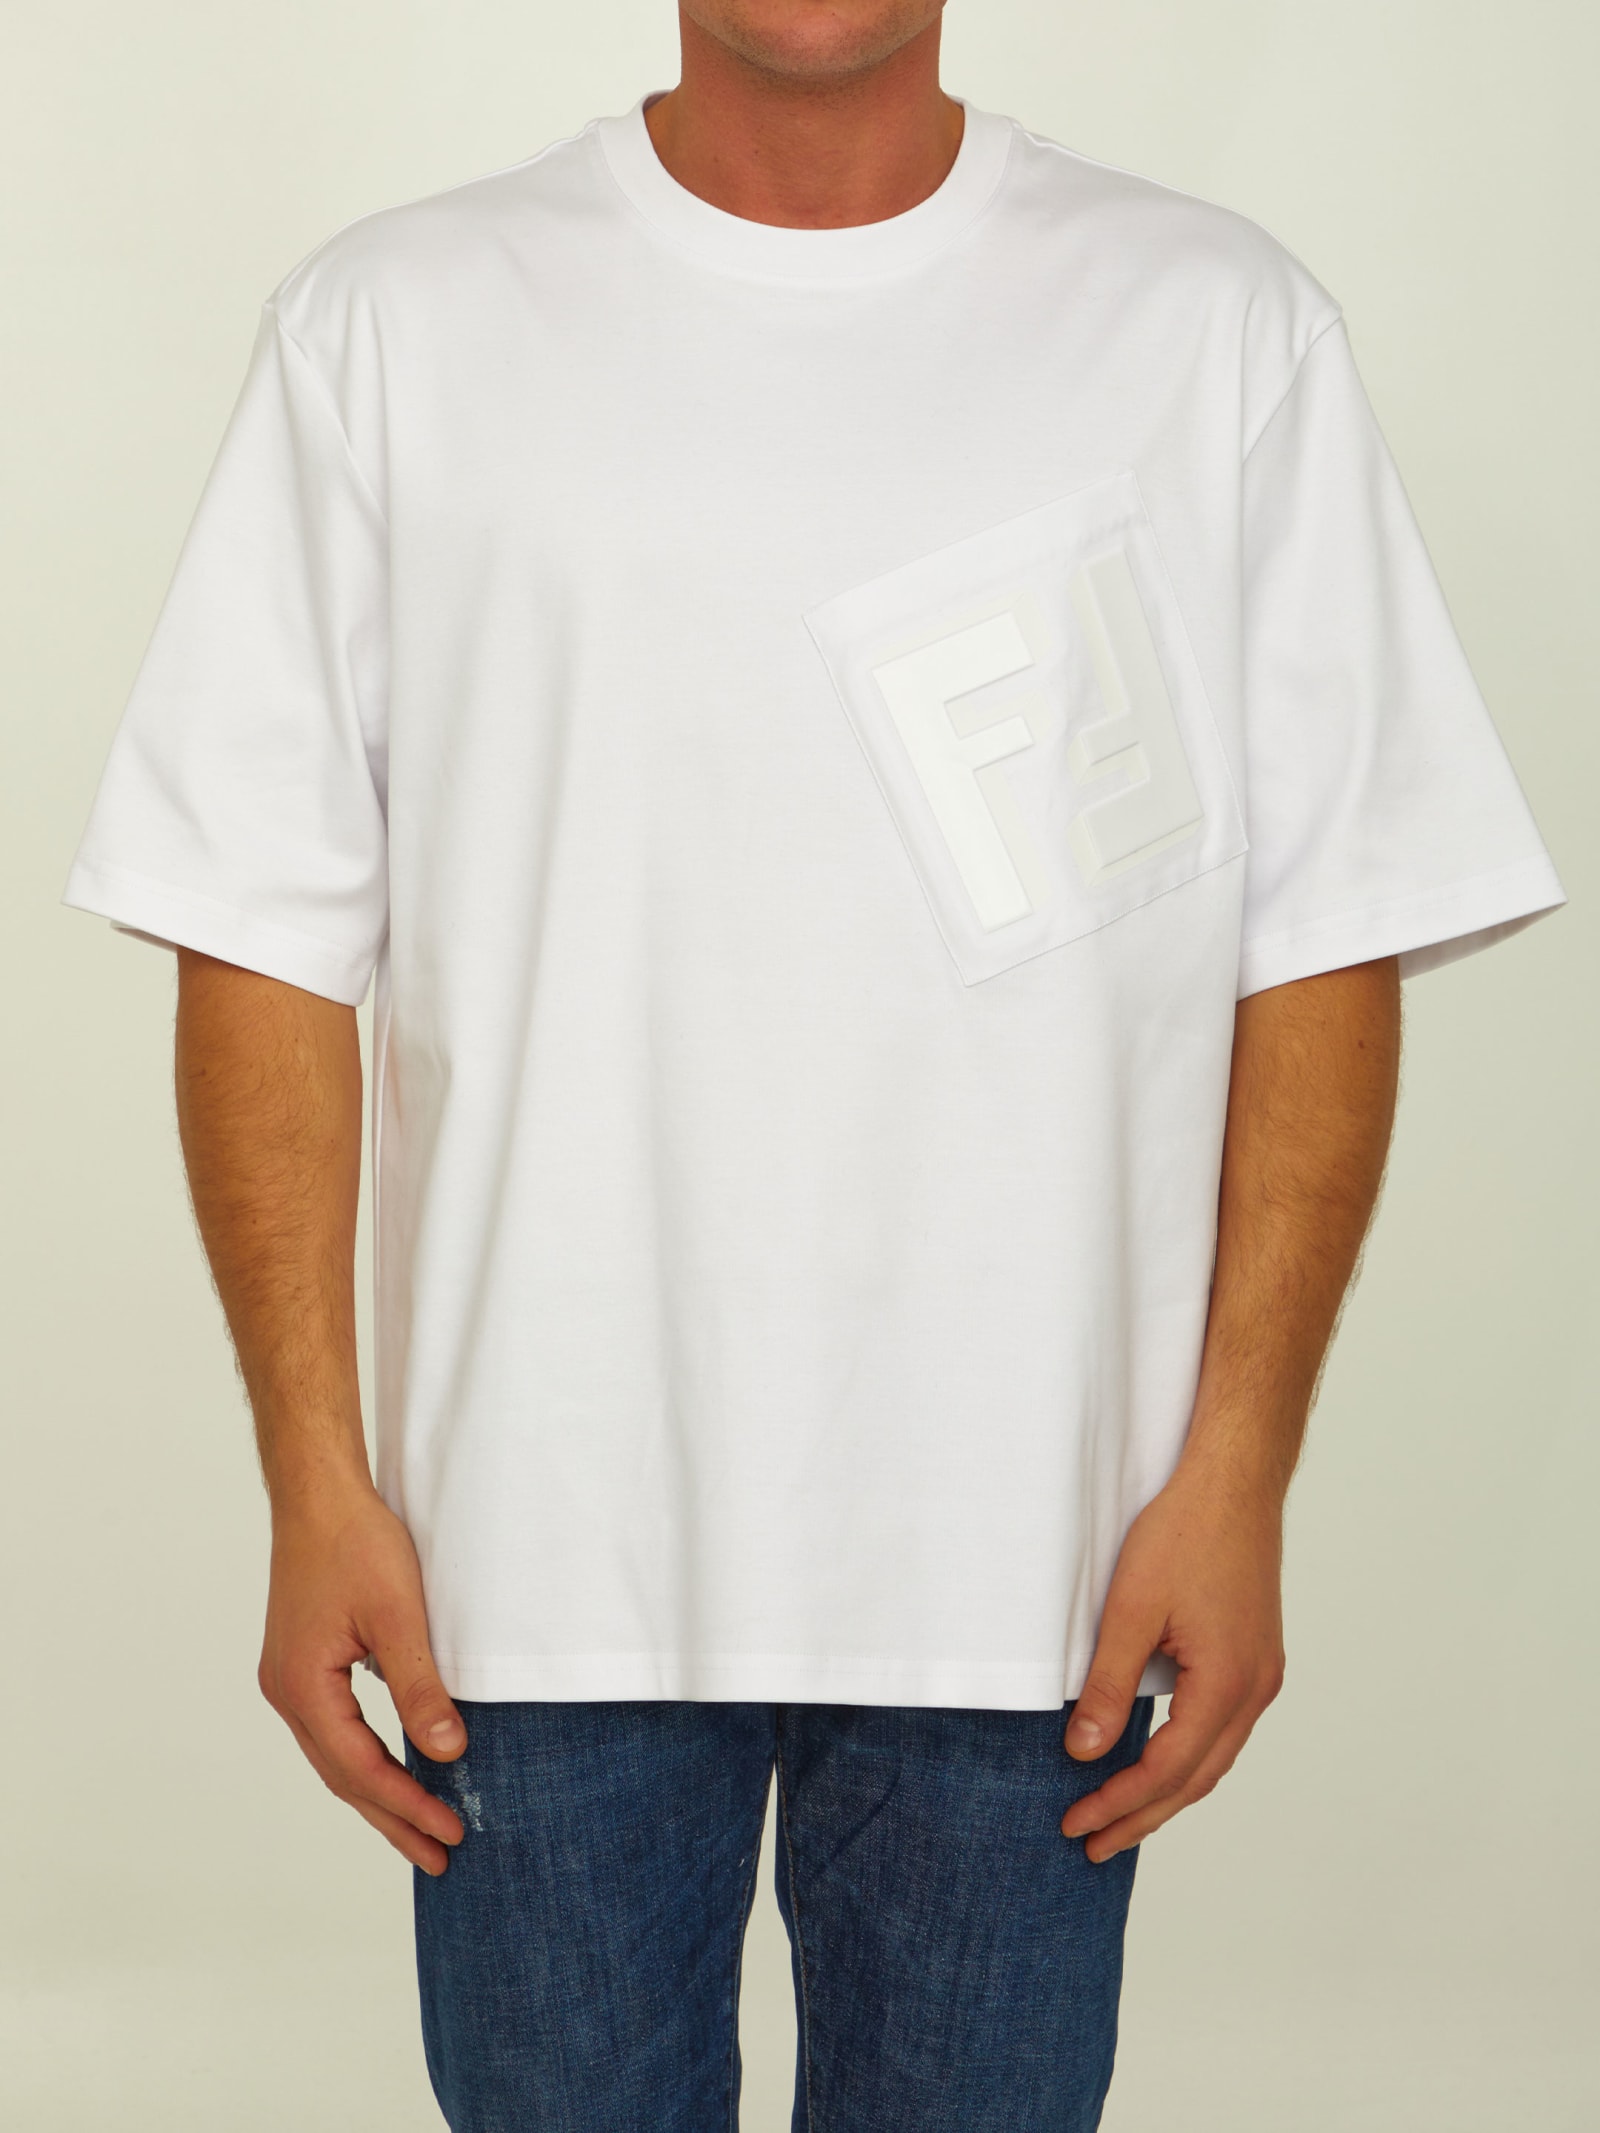 Fendi White Jersey T-shirt